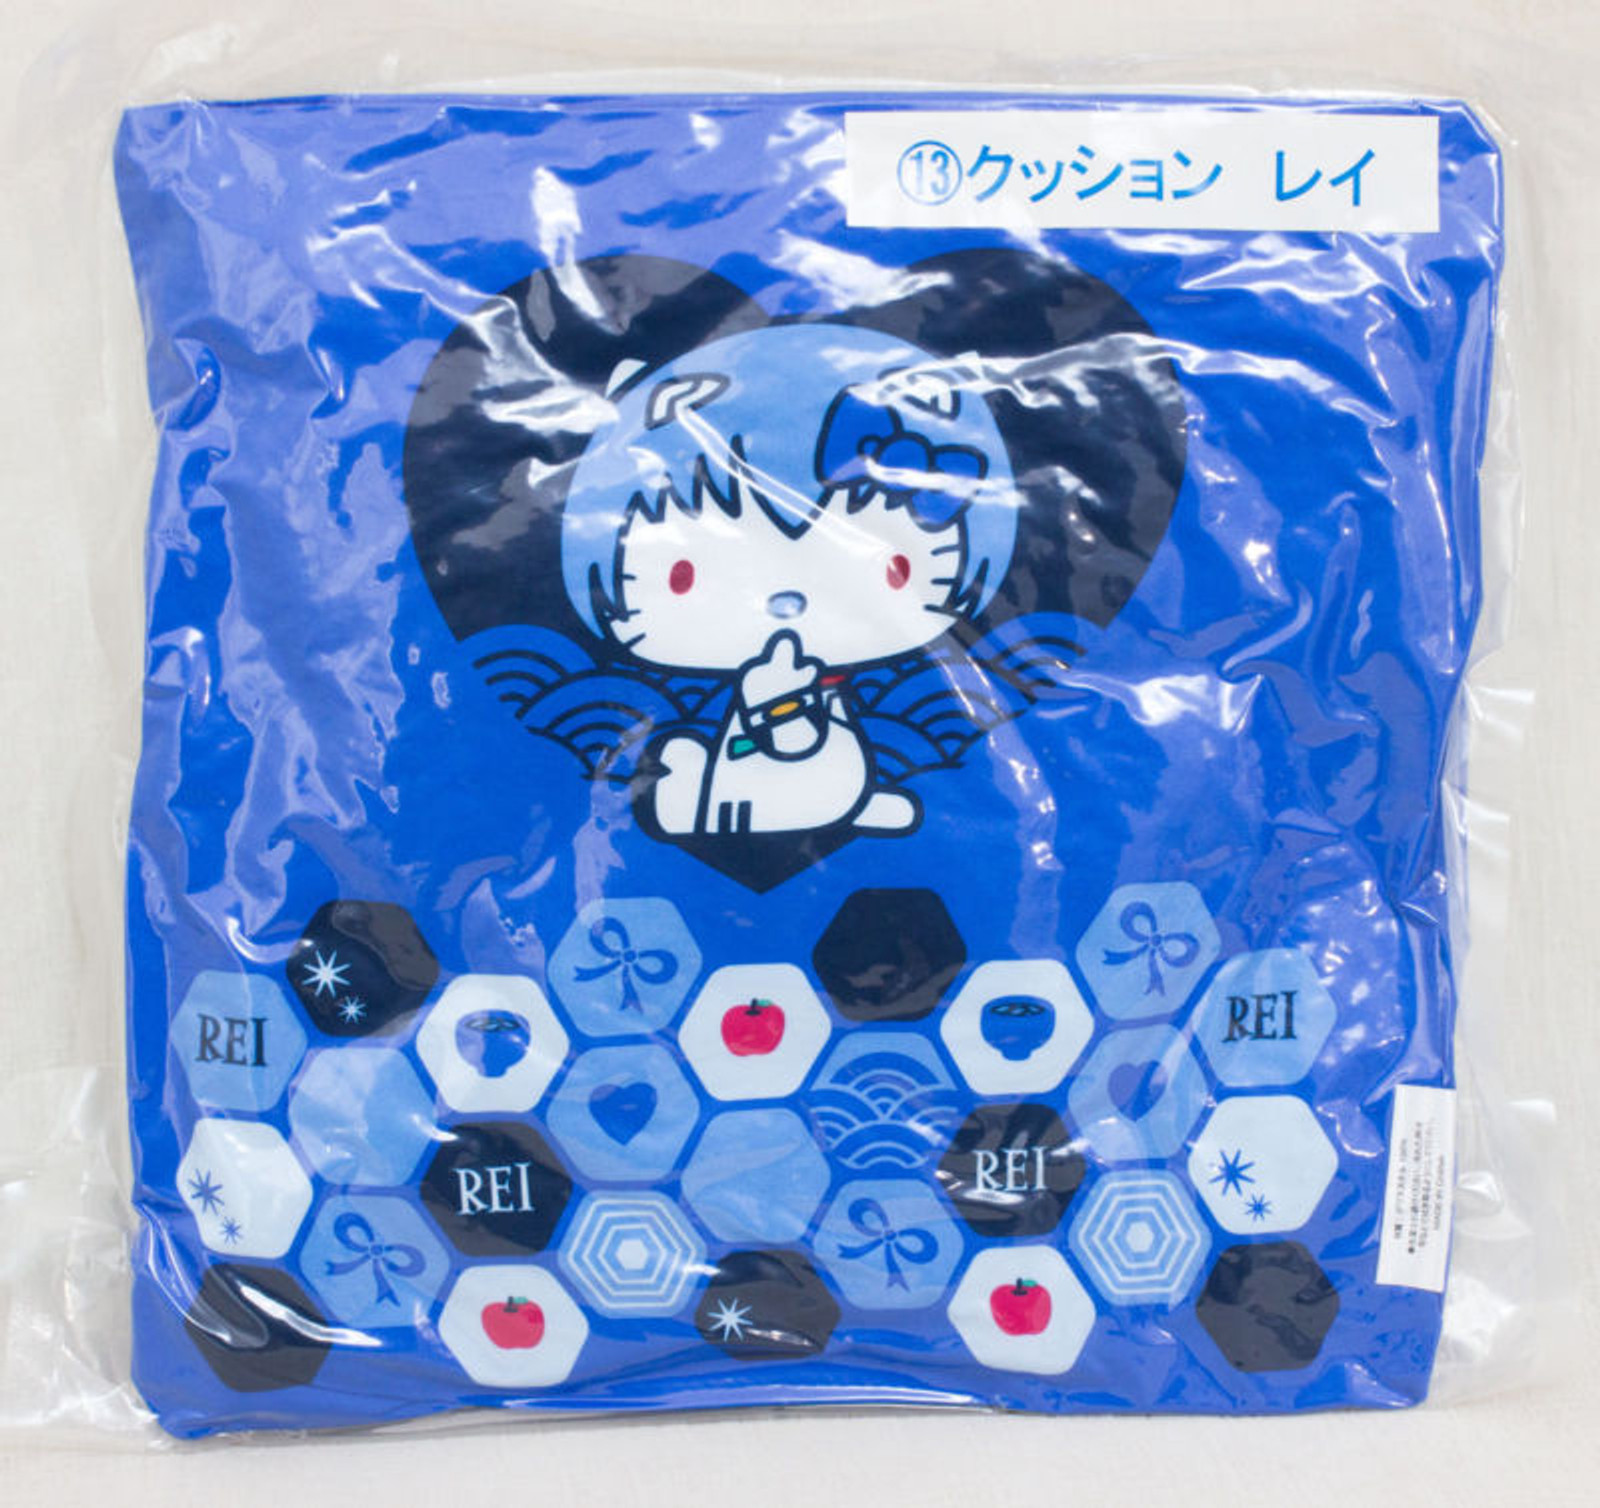 Evangelion x Hello Kitty Cushion Pillow Rei Ayanami Ver. Sanrio JAPAN ANIME